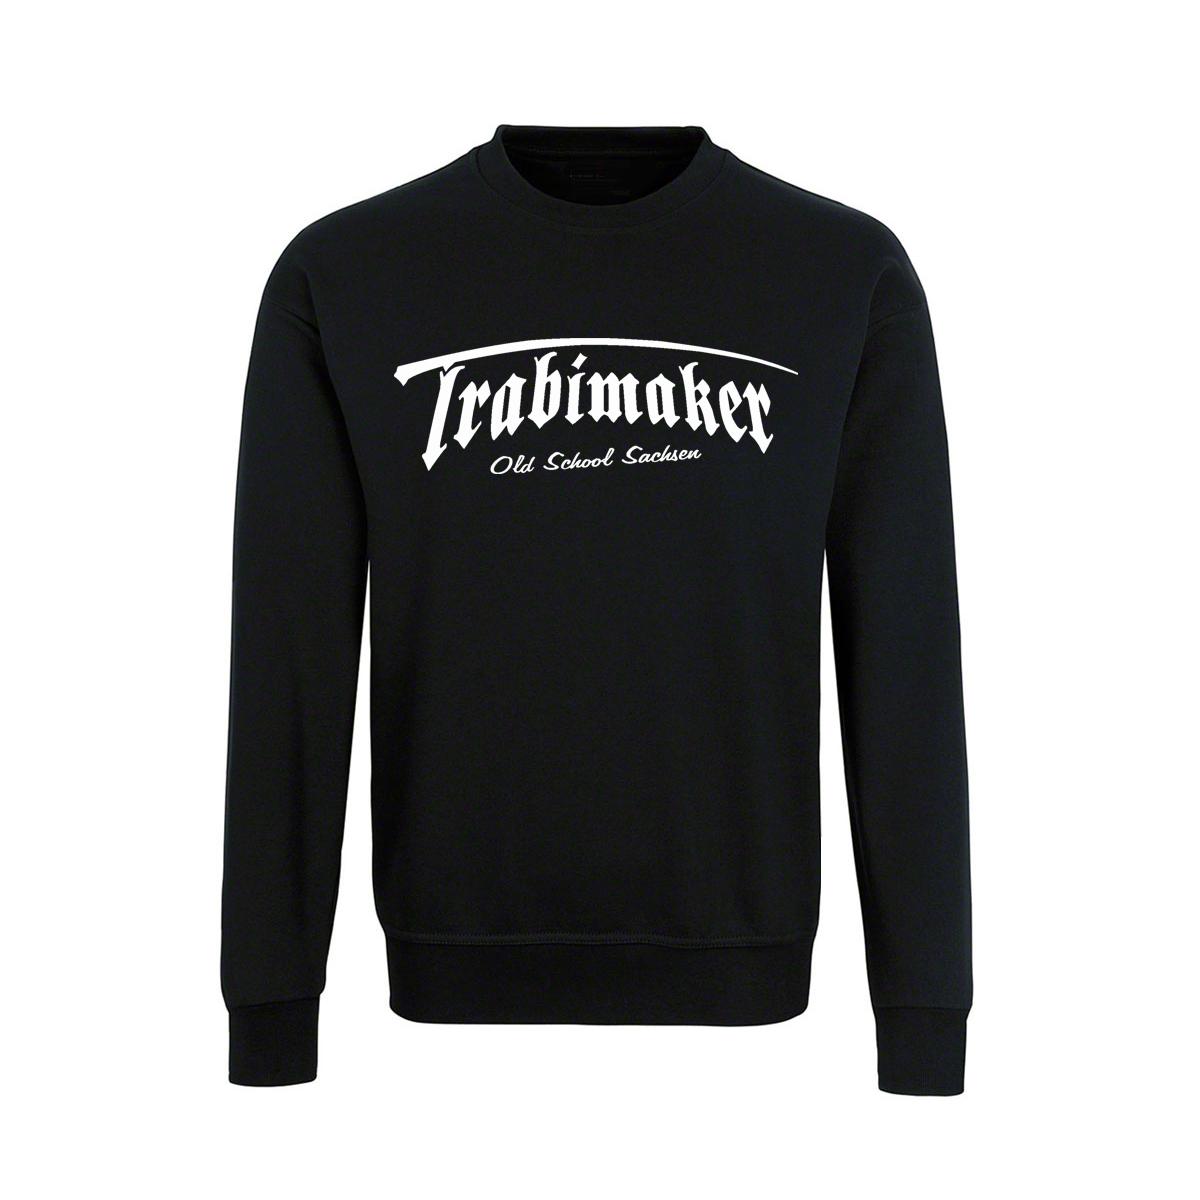 Trabimaker - Old School Sachsen - Männer Pullover - schwarz